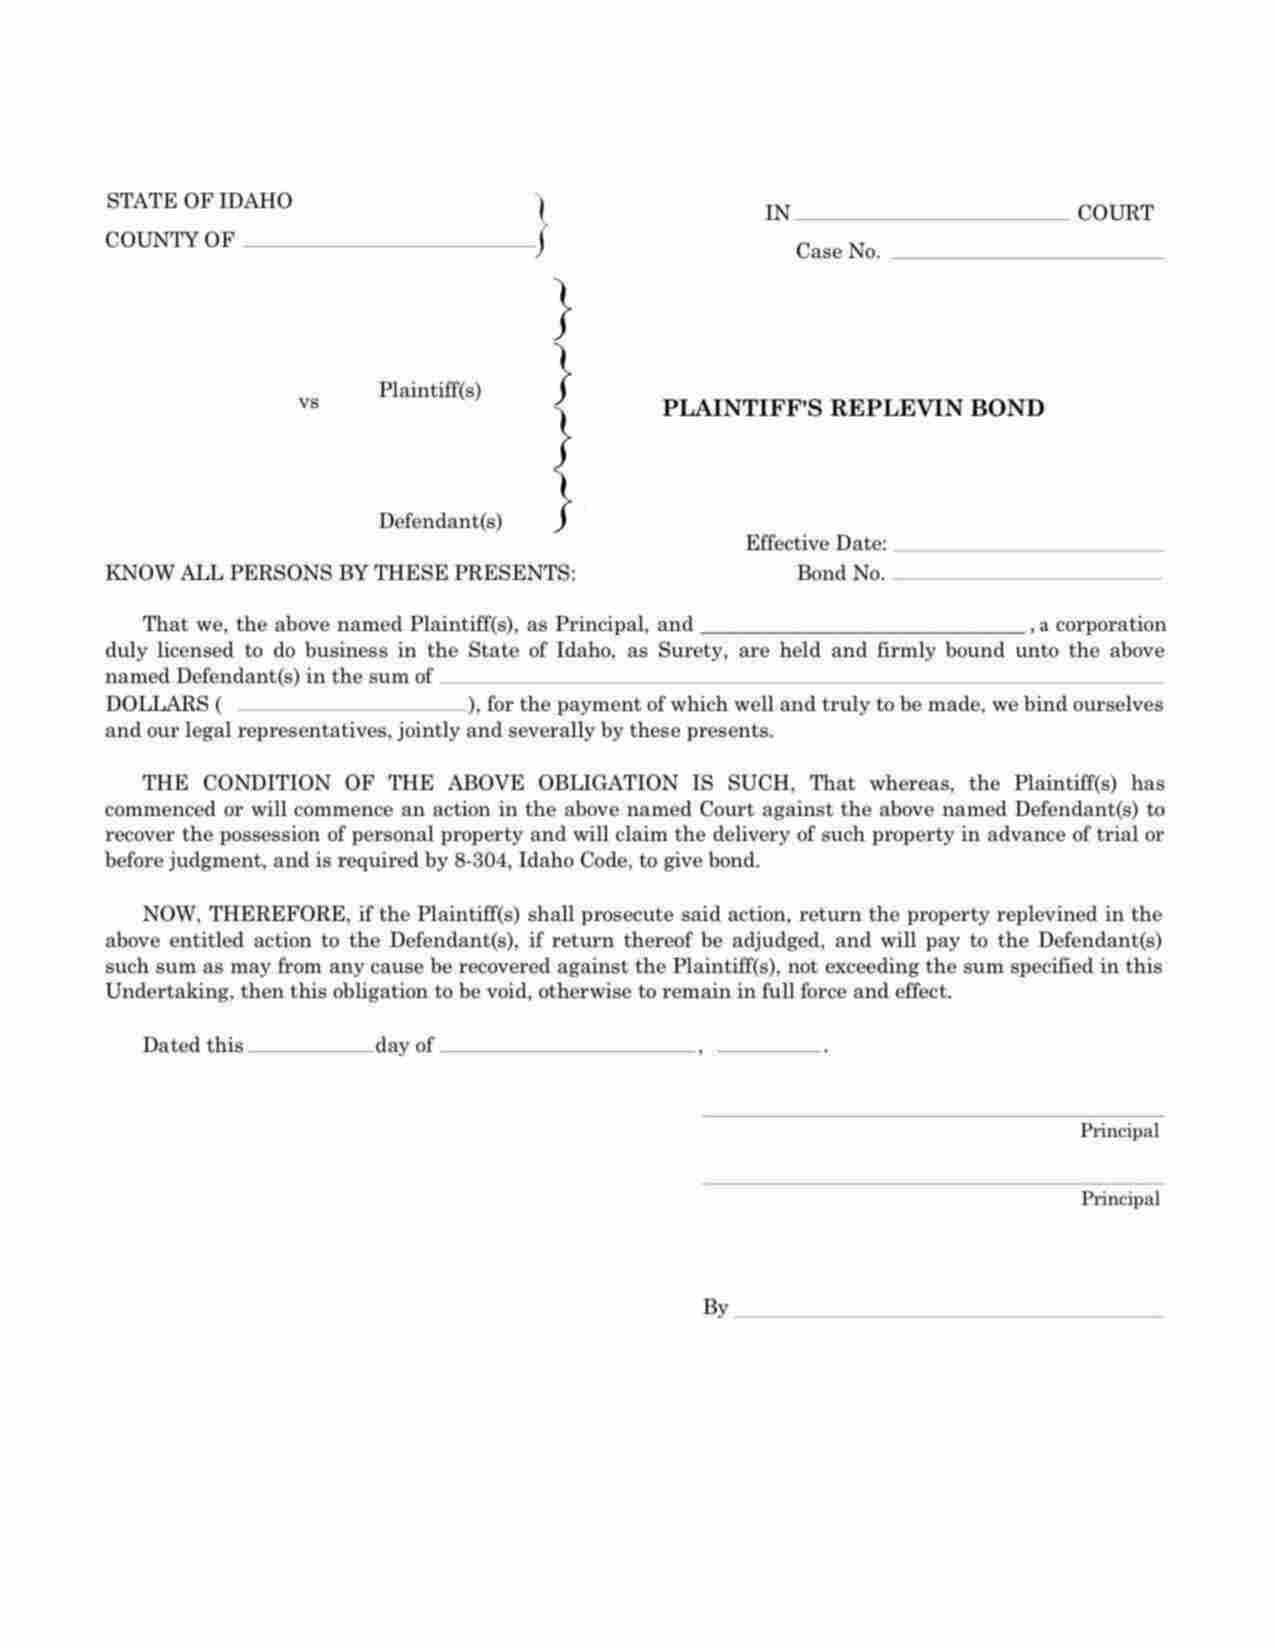 Idaho Plaintiffs Replevin Bond Form